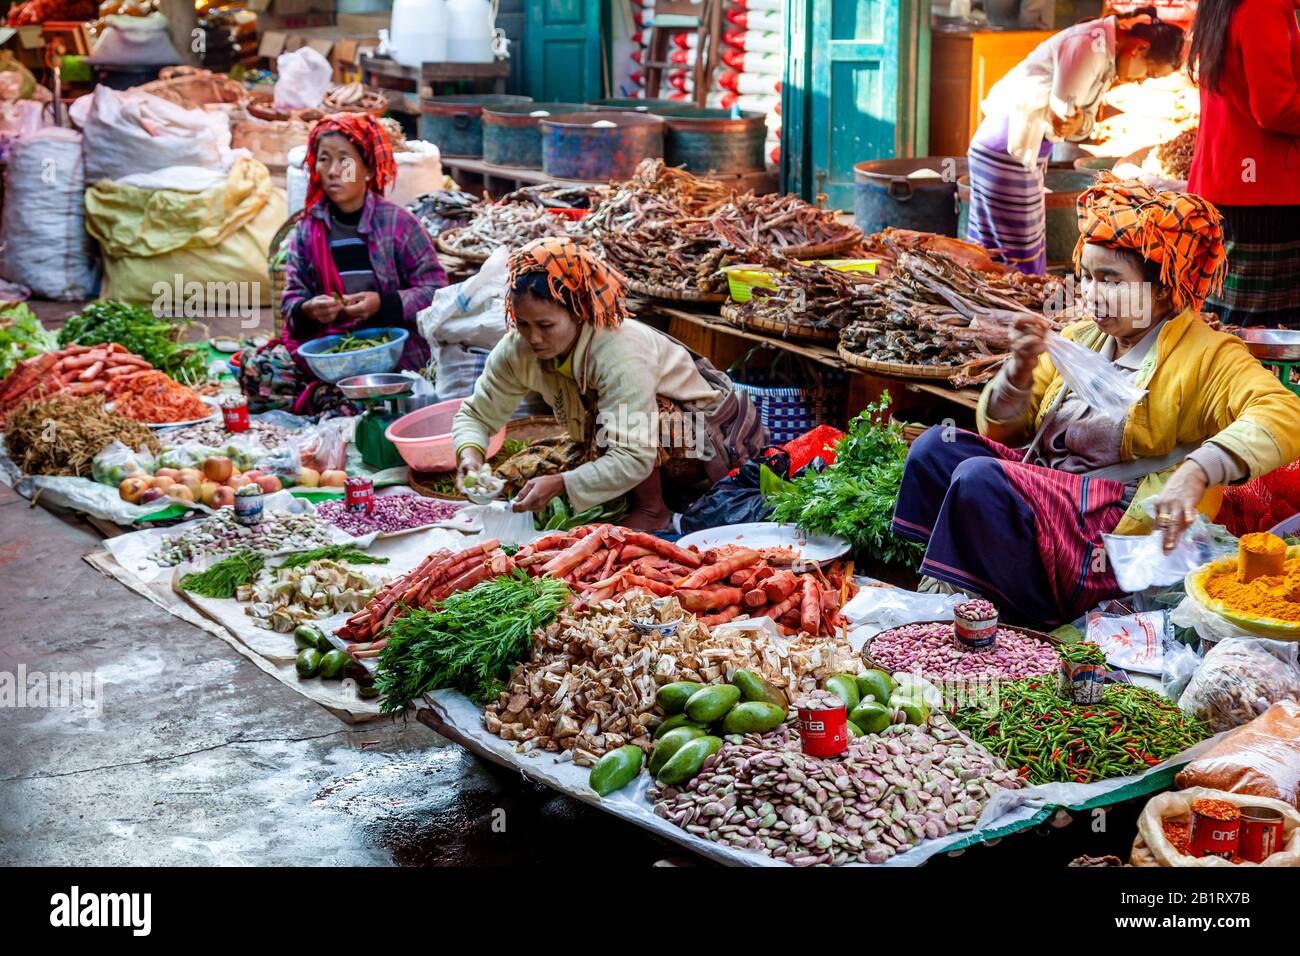 Donne Del Gruppo Etnico Di Pa O Che Vende Fagioli E Verdure Al Mercato Di Mingalar, Loikaw, Stato Di Kayah, Myanmar. Foto Stock